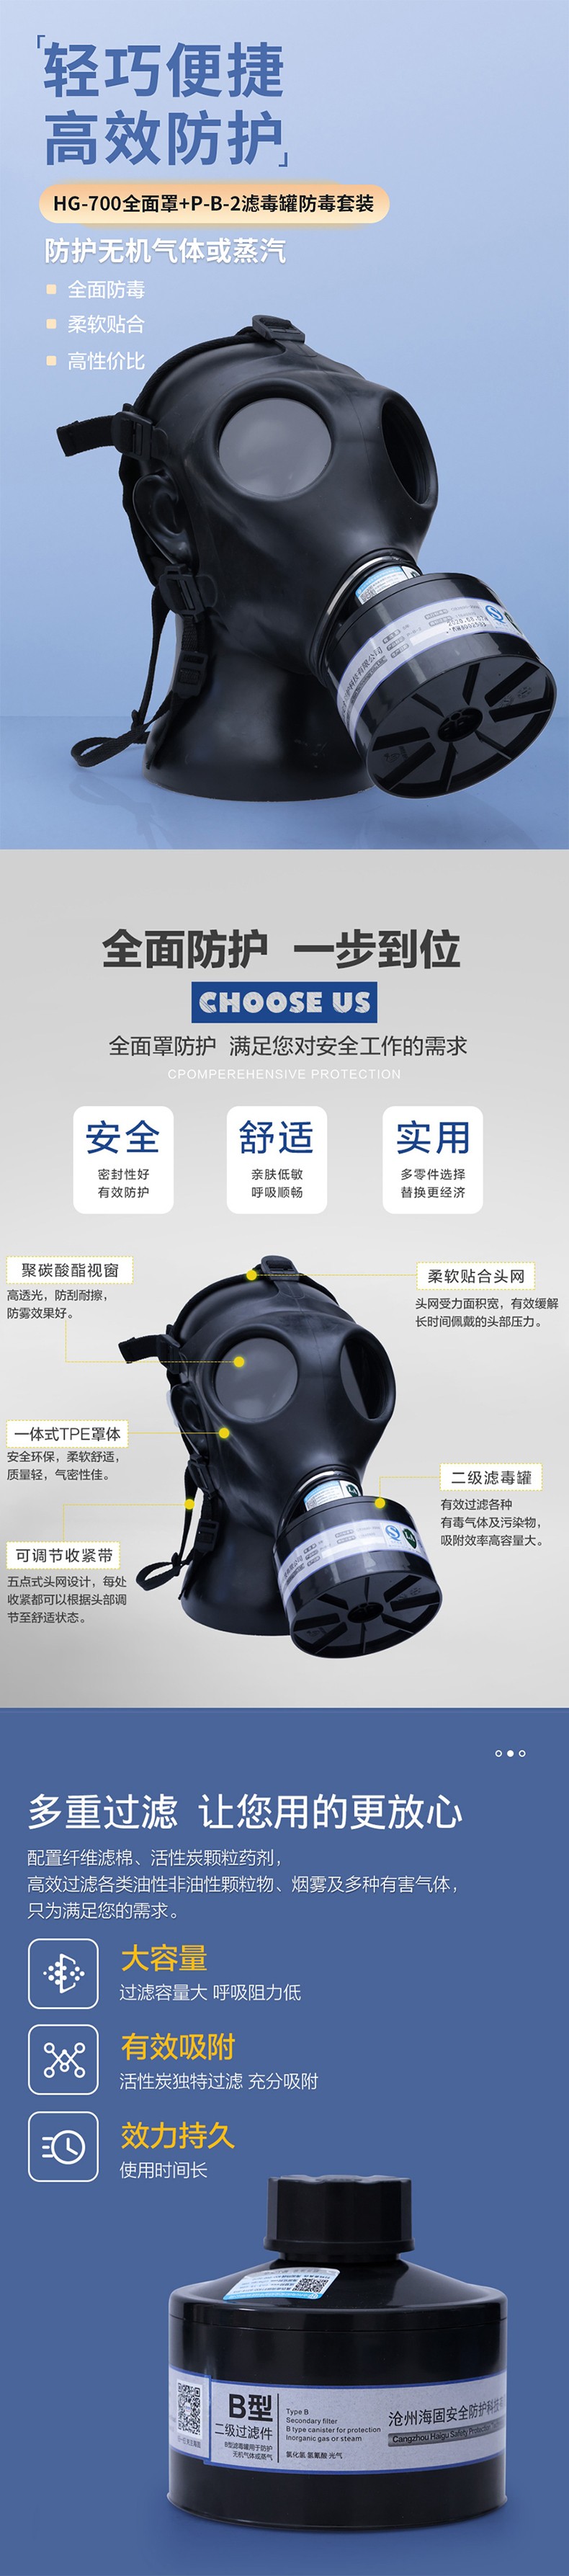 海固HG-700 P-B-2滤毒罐无机气体综合防毒面具图片